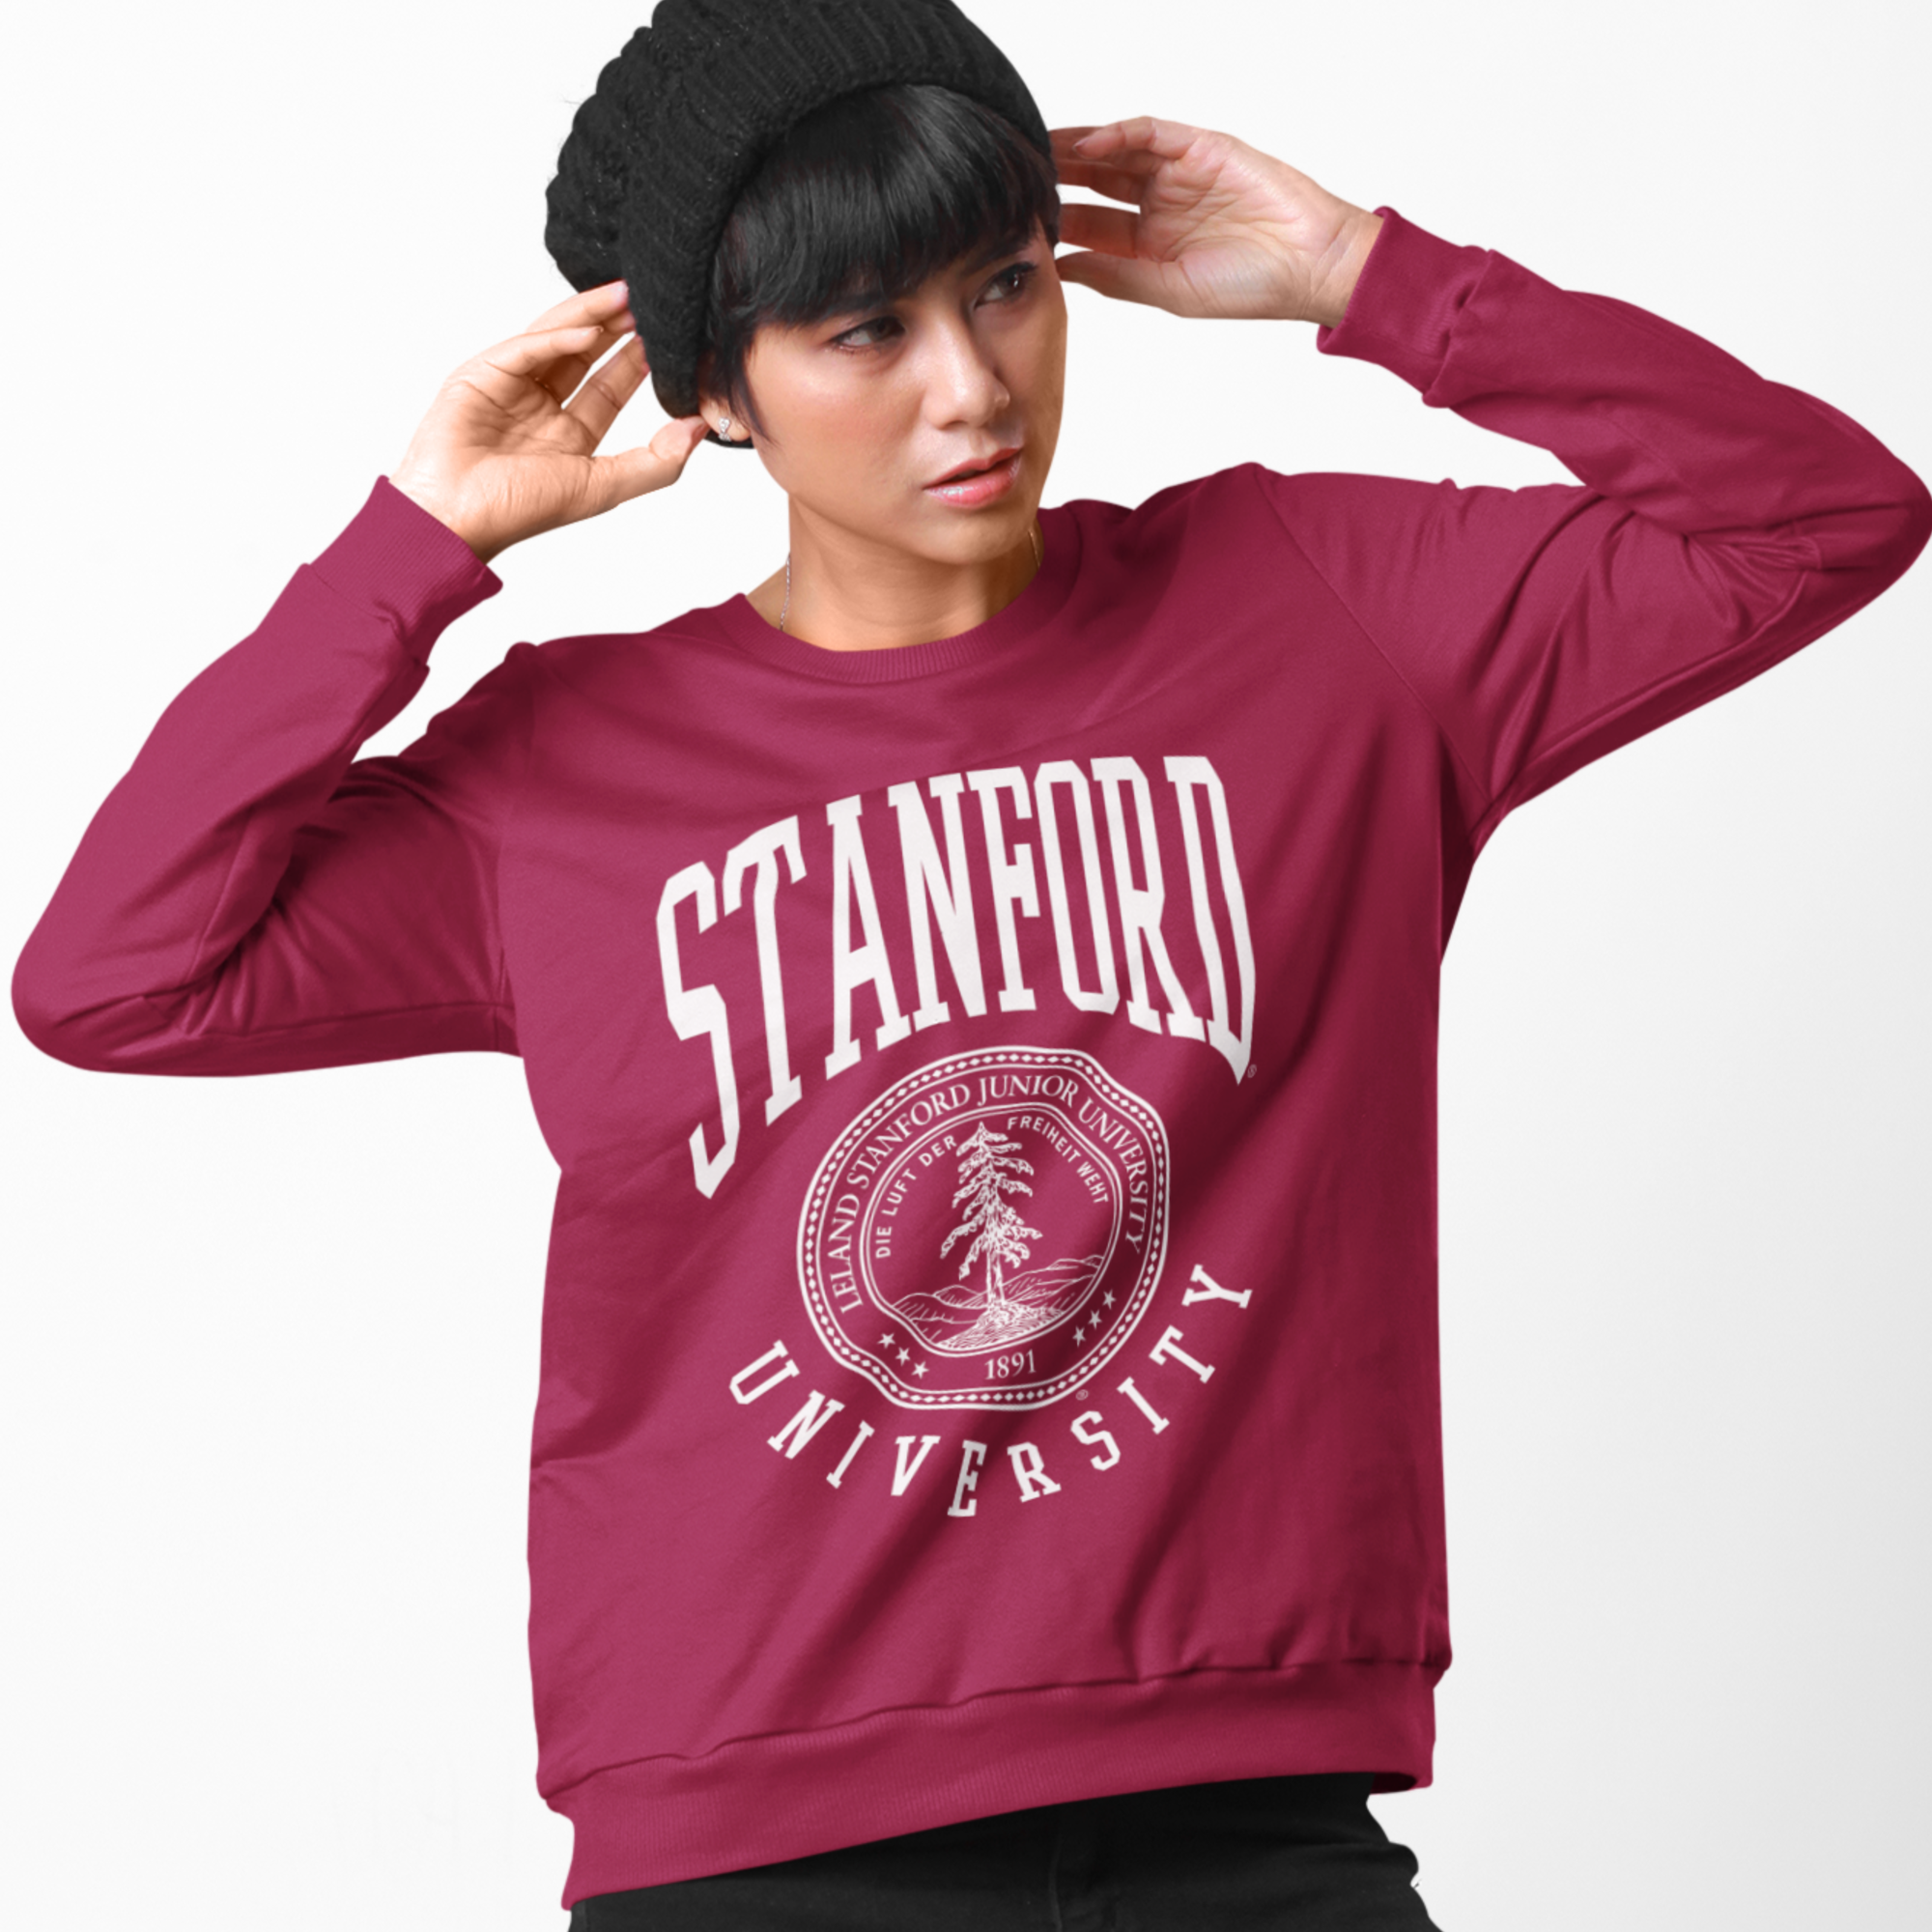 Stanford University Crest Maroon Unisex Sweatshirt